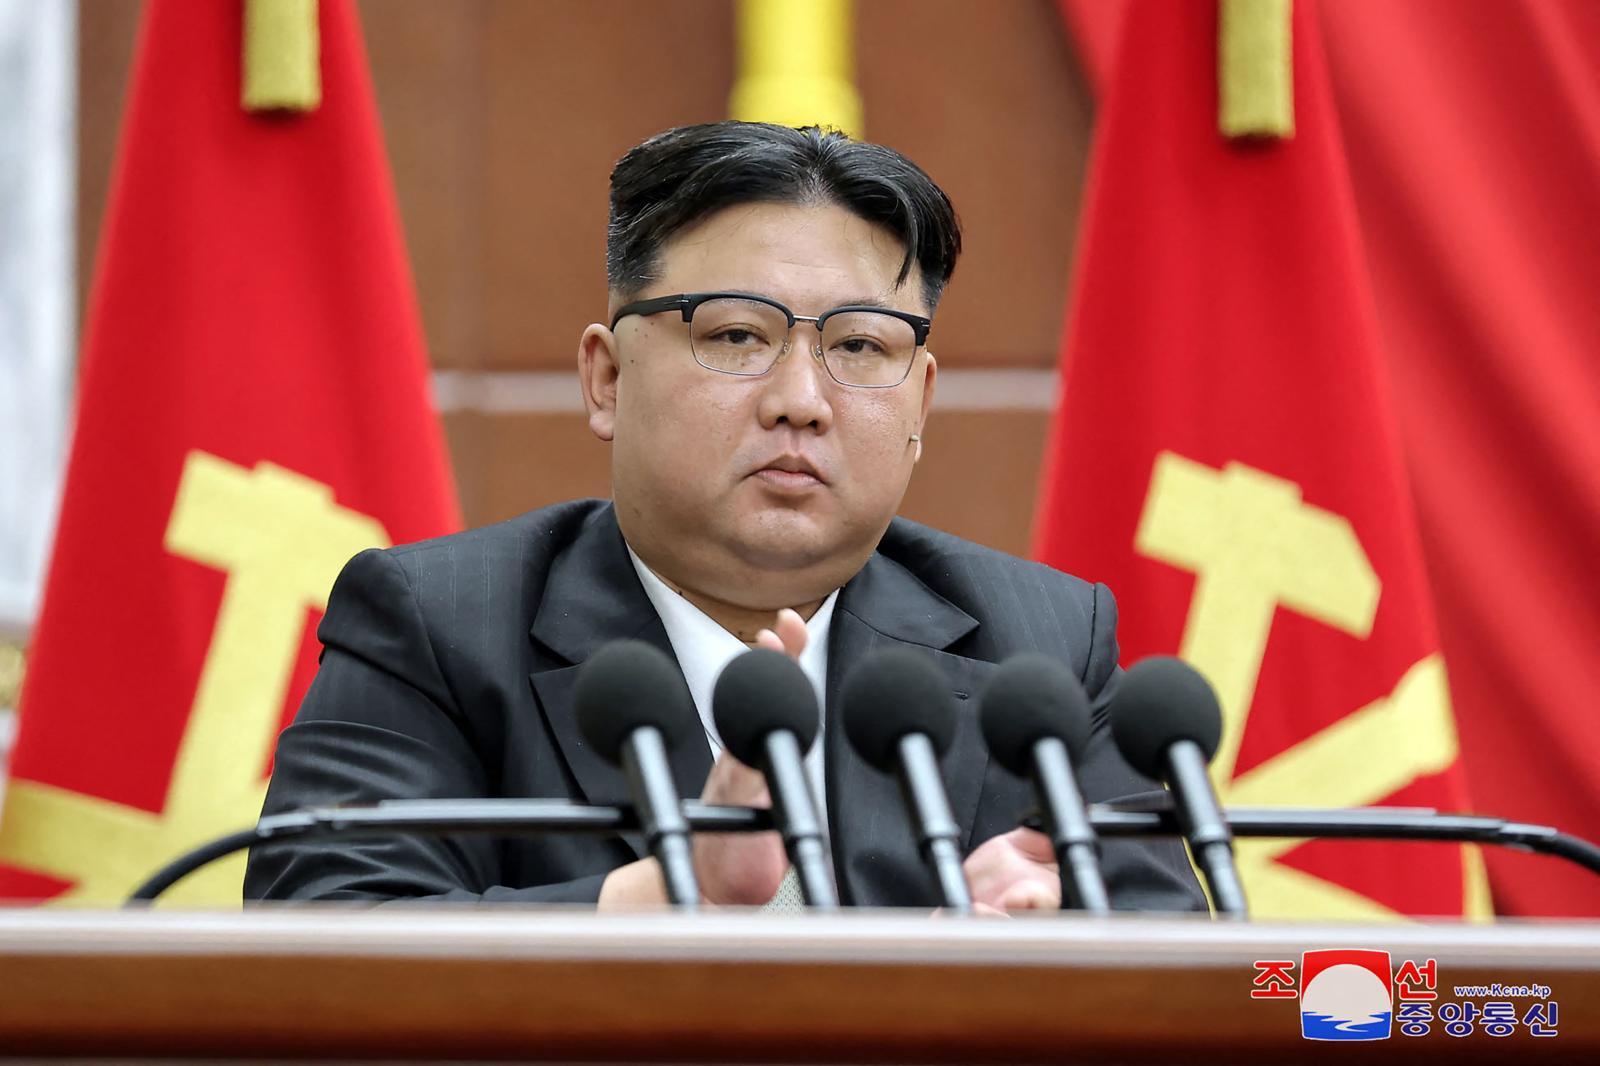 “คิม จองอึน” ต้องการสงครามจริง ๆ หรือเป็นแค่เกมการเมือง?